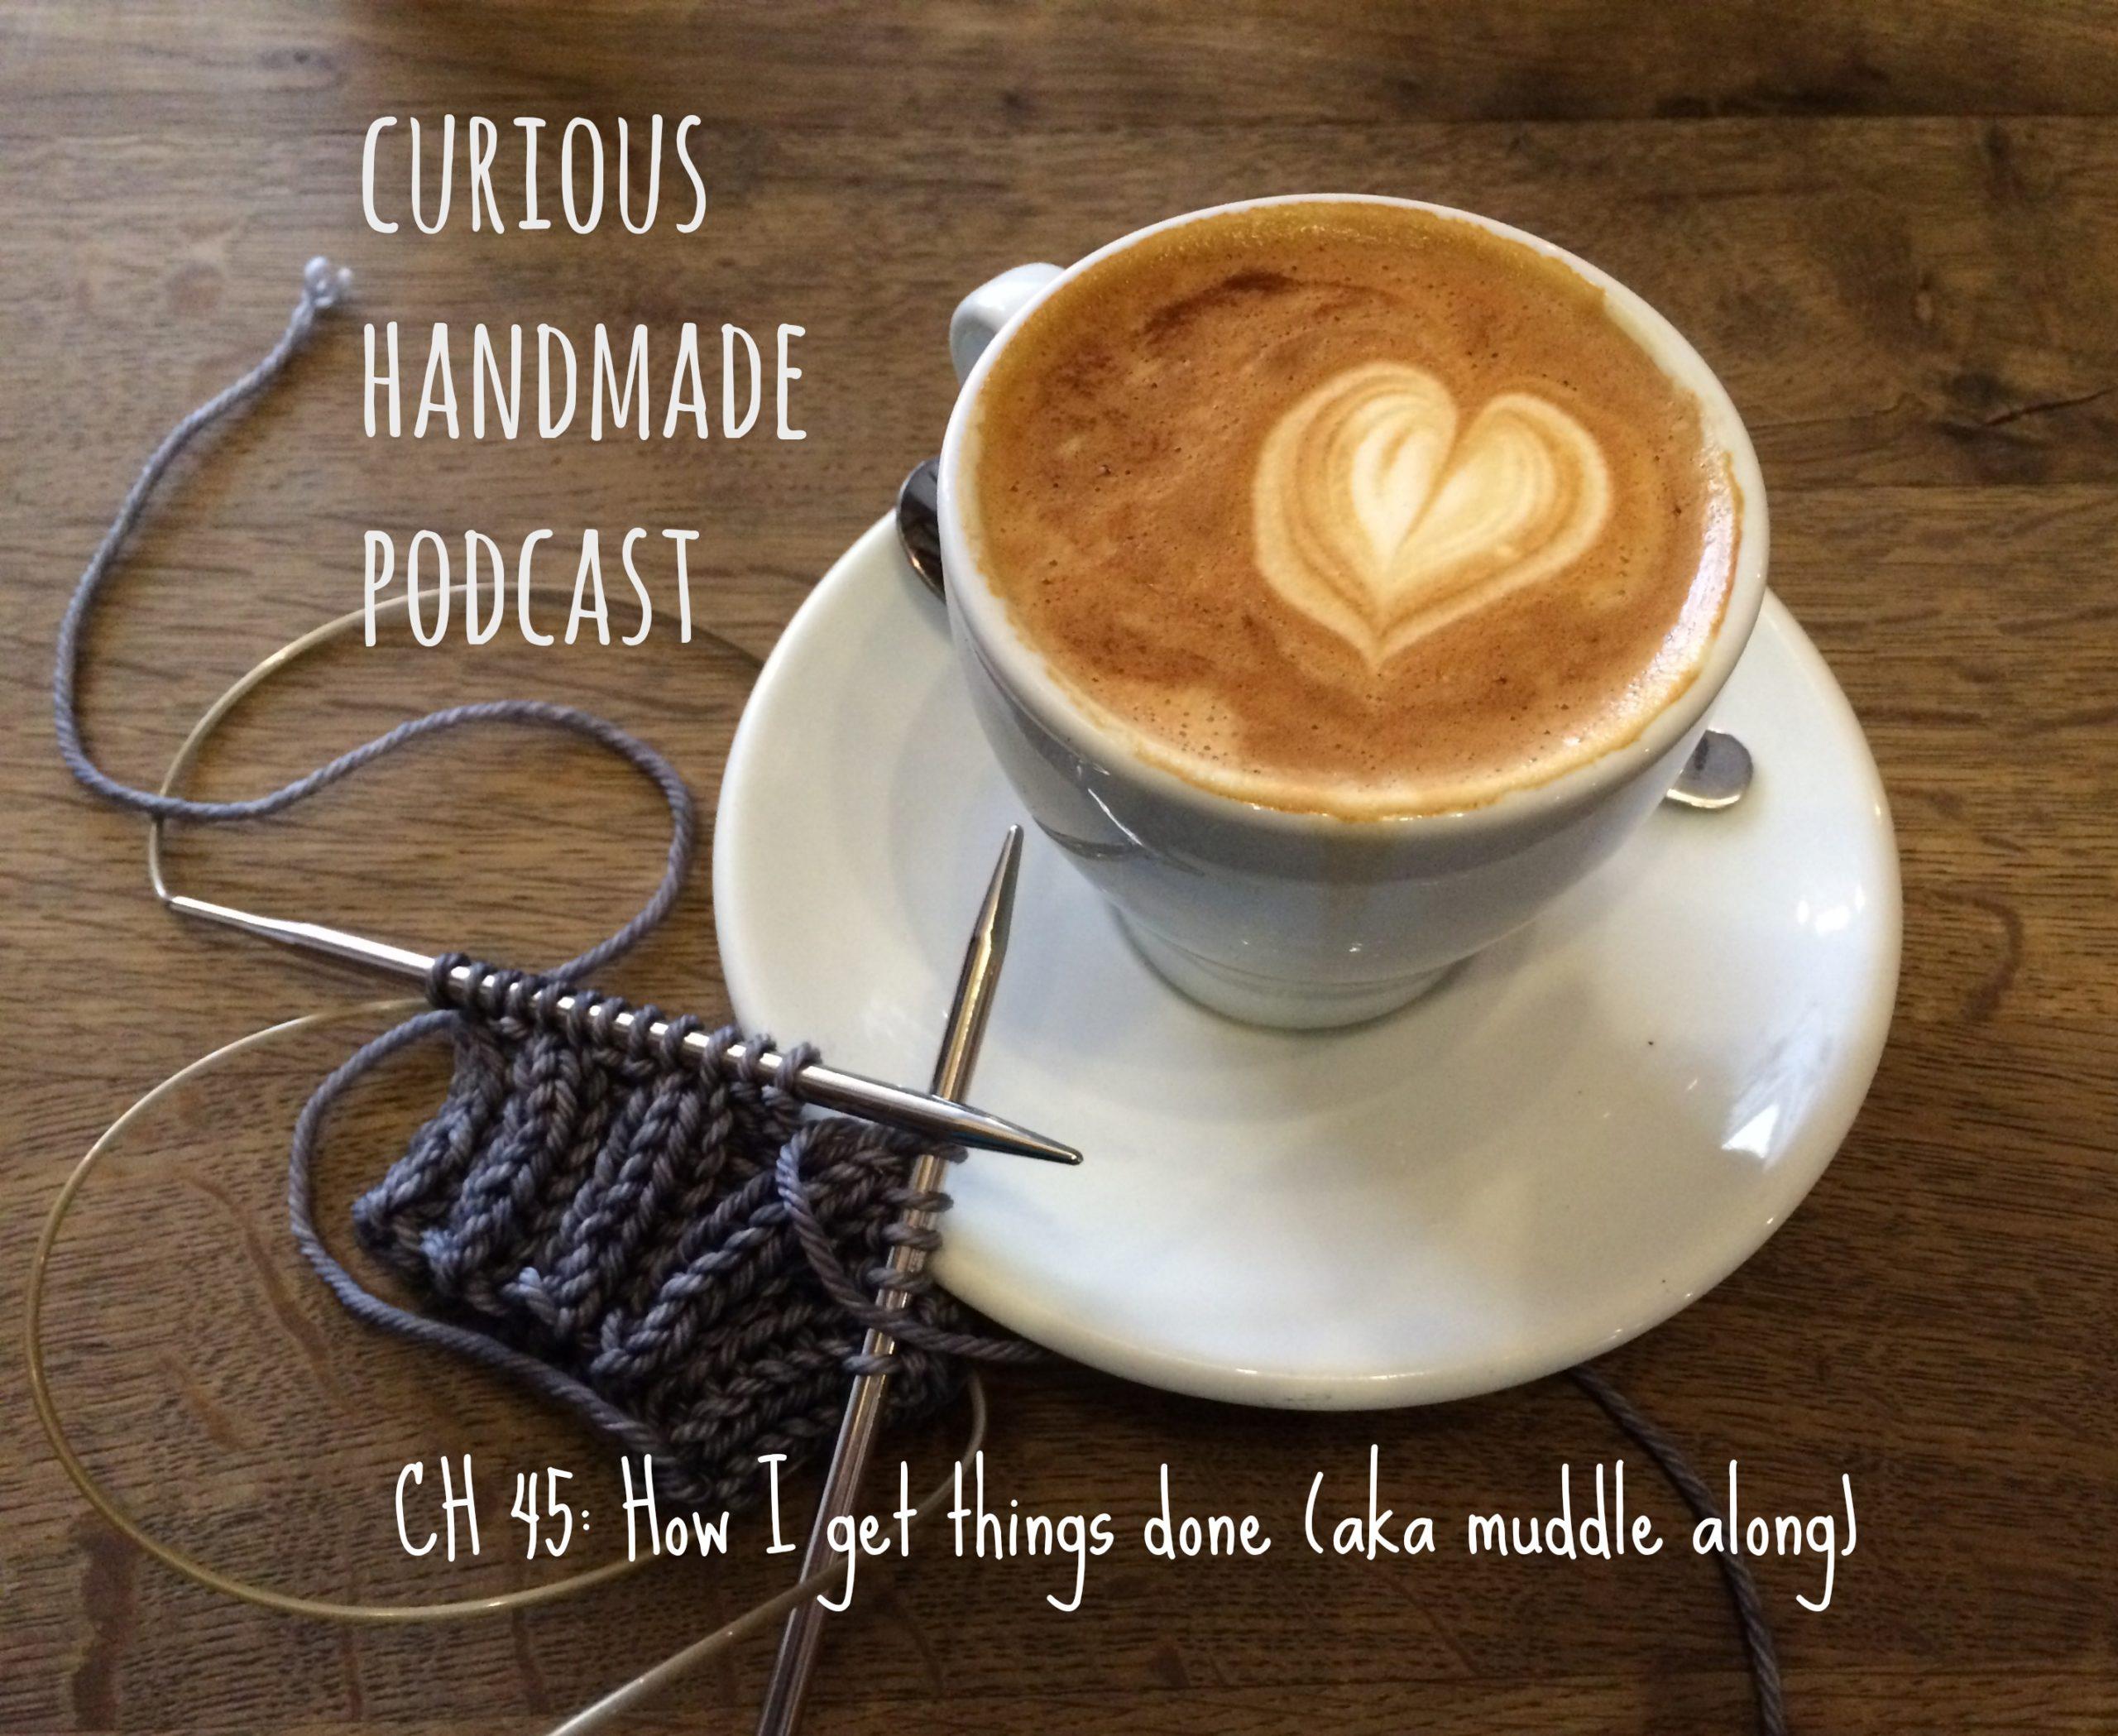 Curious Handmade Podcast Episode 45